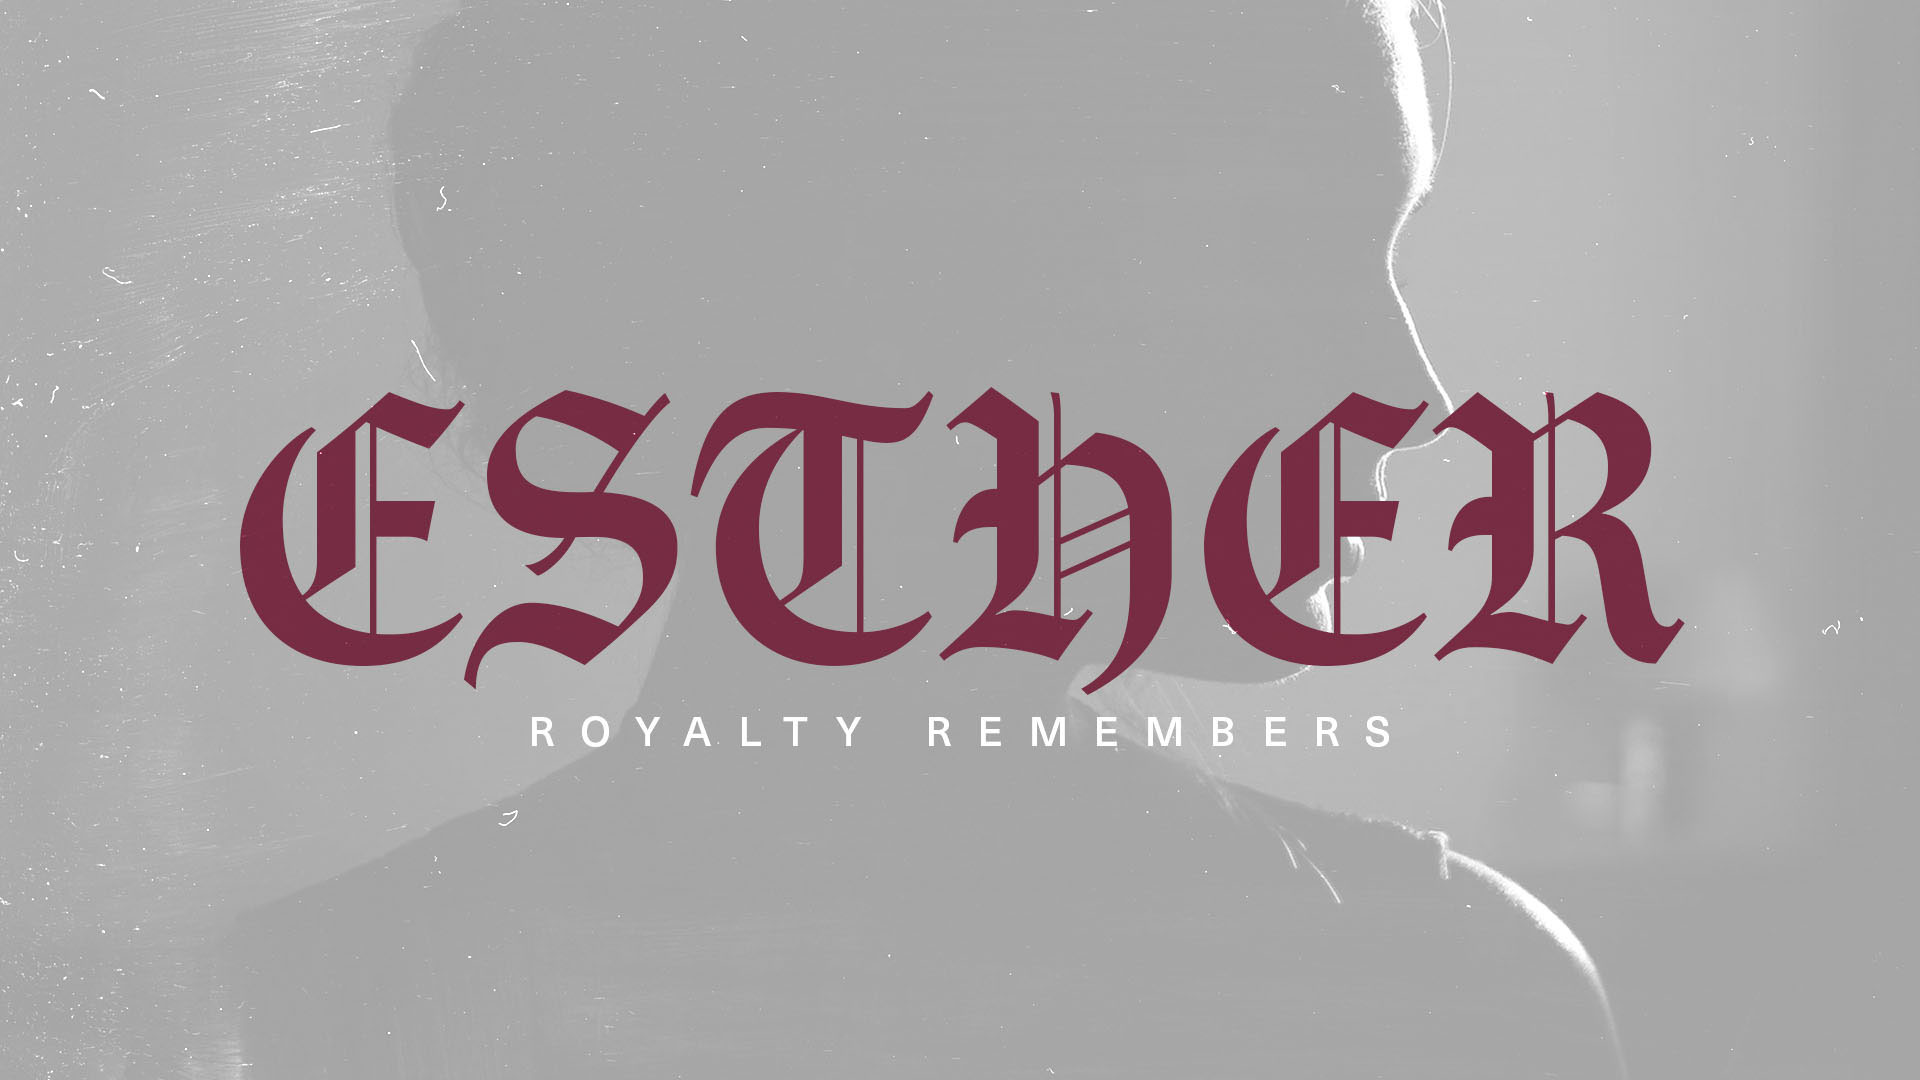 Series: Esther Royalty Remembers: Week 3